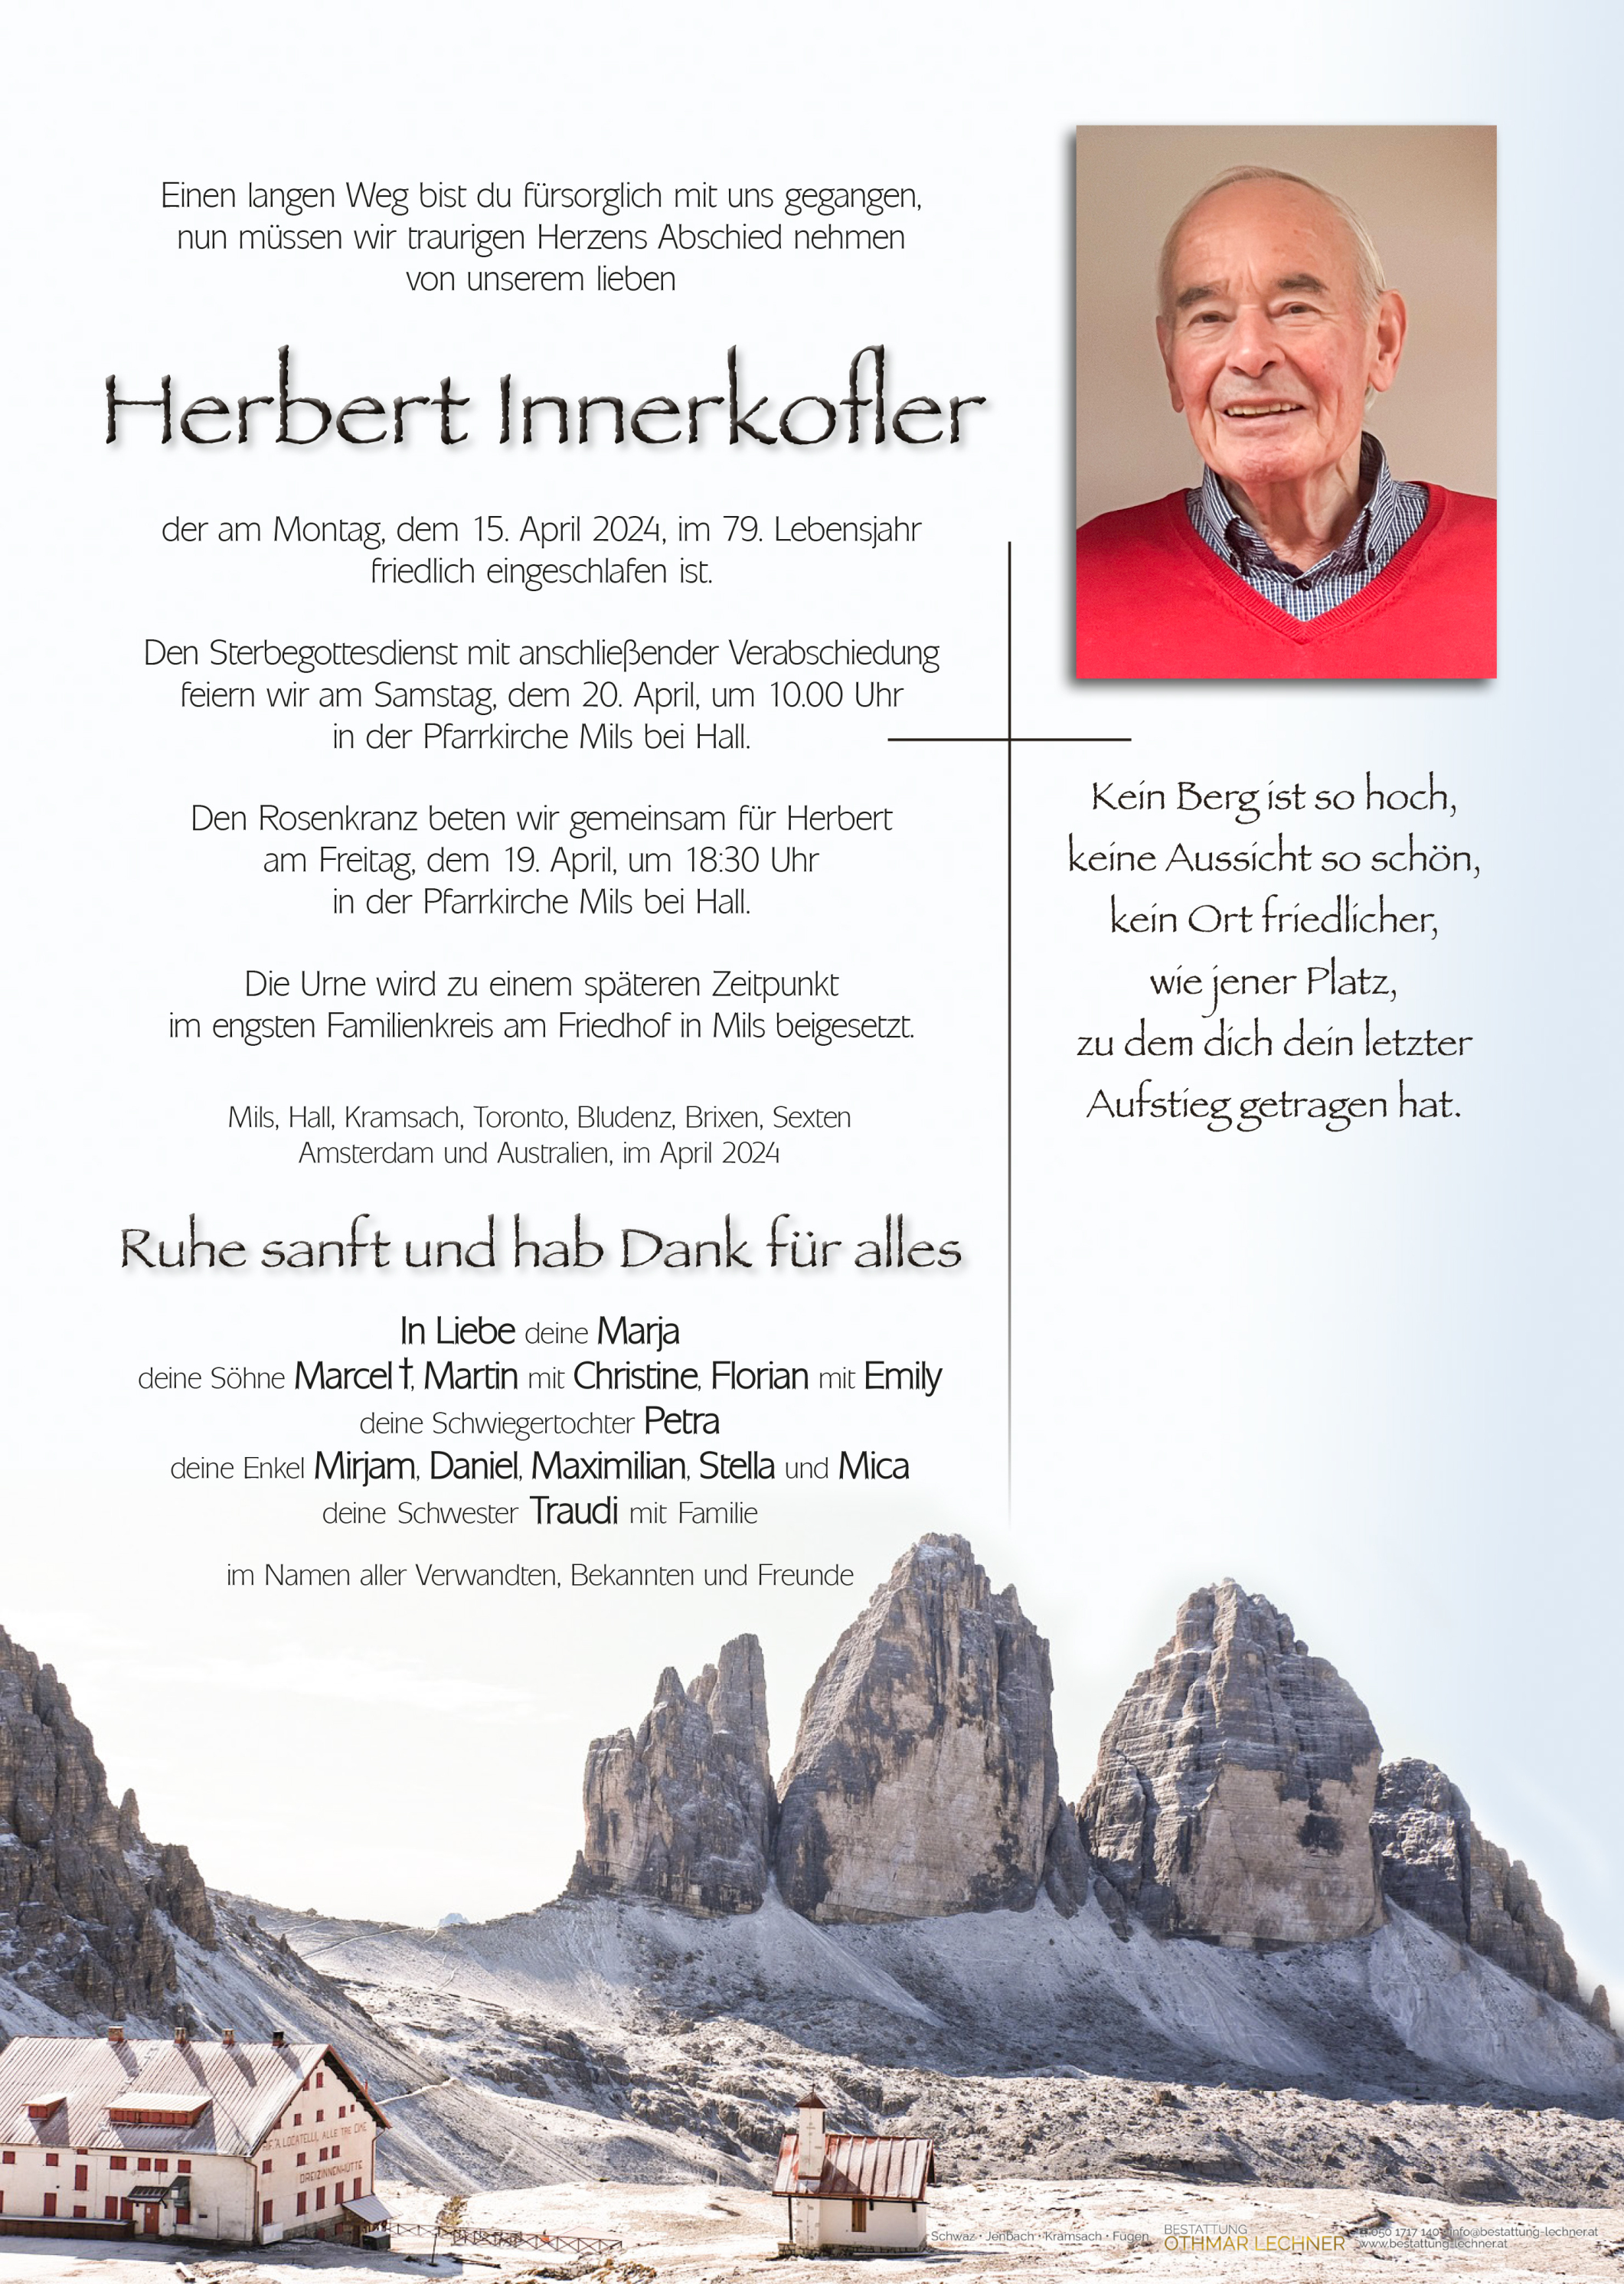 Herbert Innerkofler